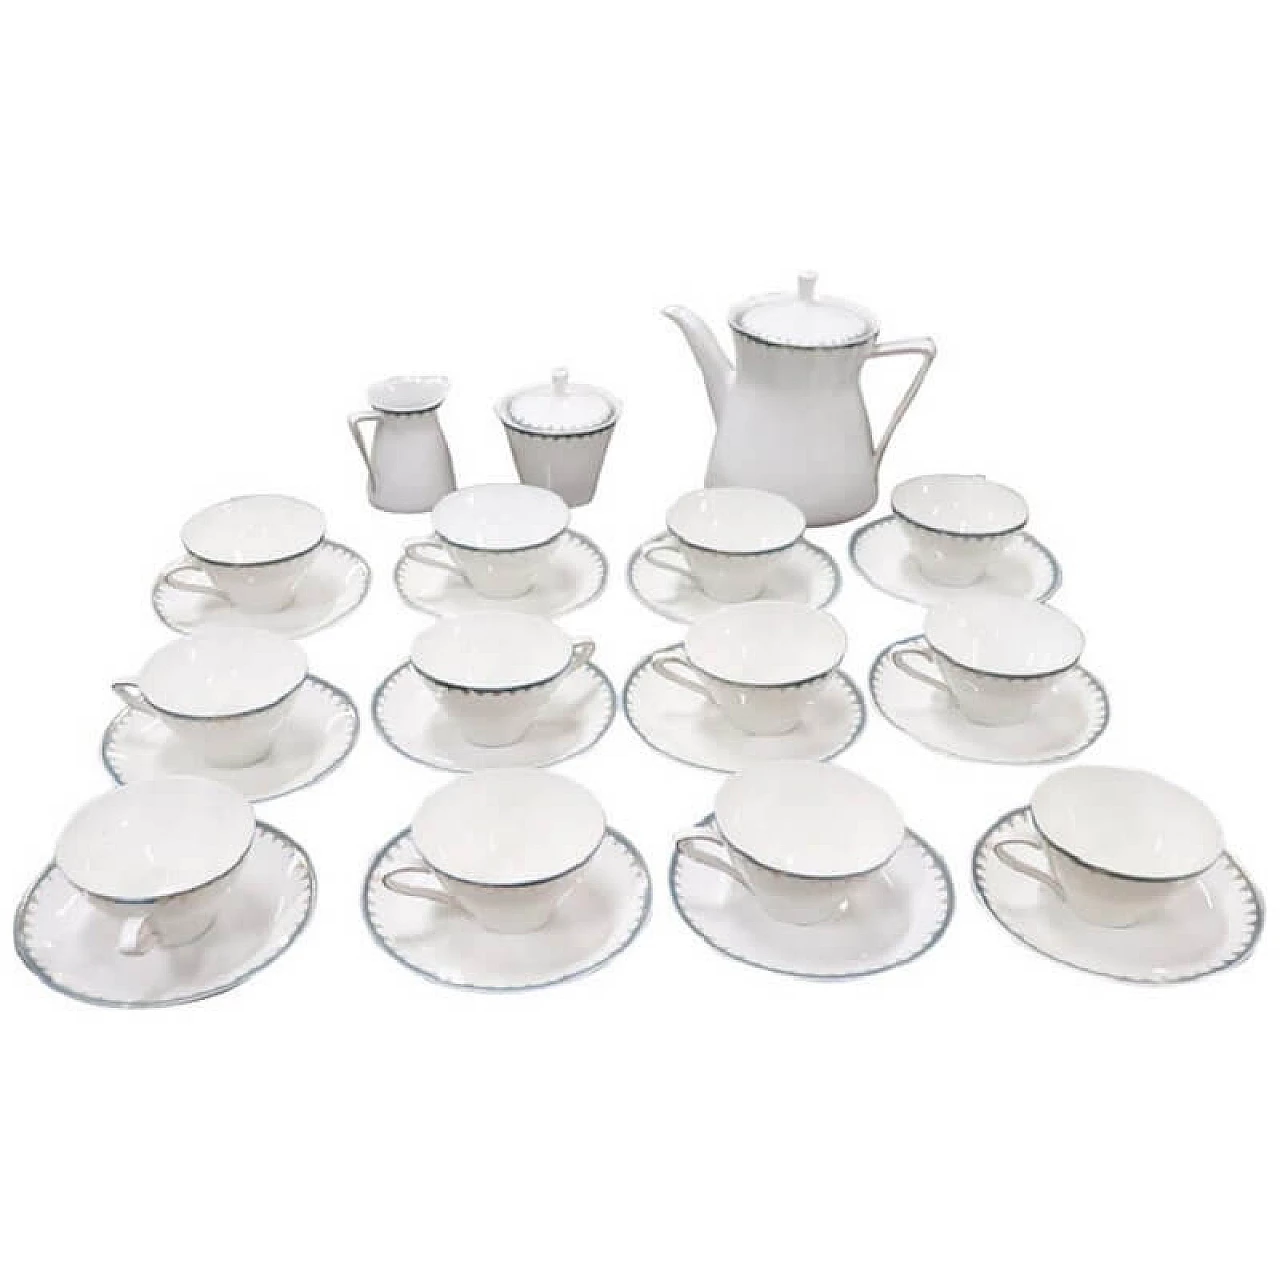 Servizio da tè per 12 persone in porcellana, marchio Bavaria 1082221